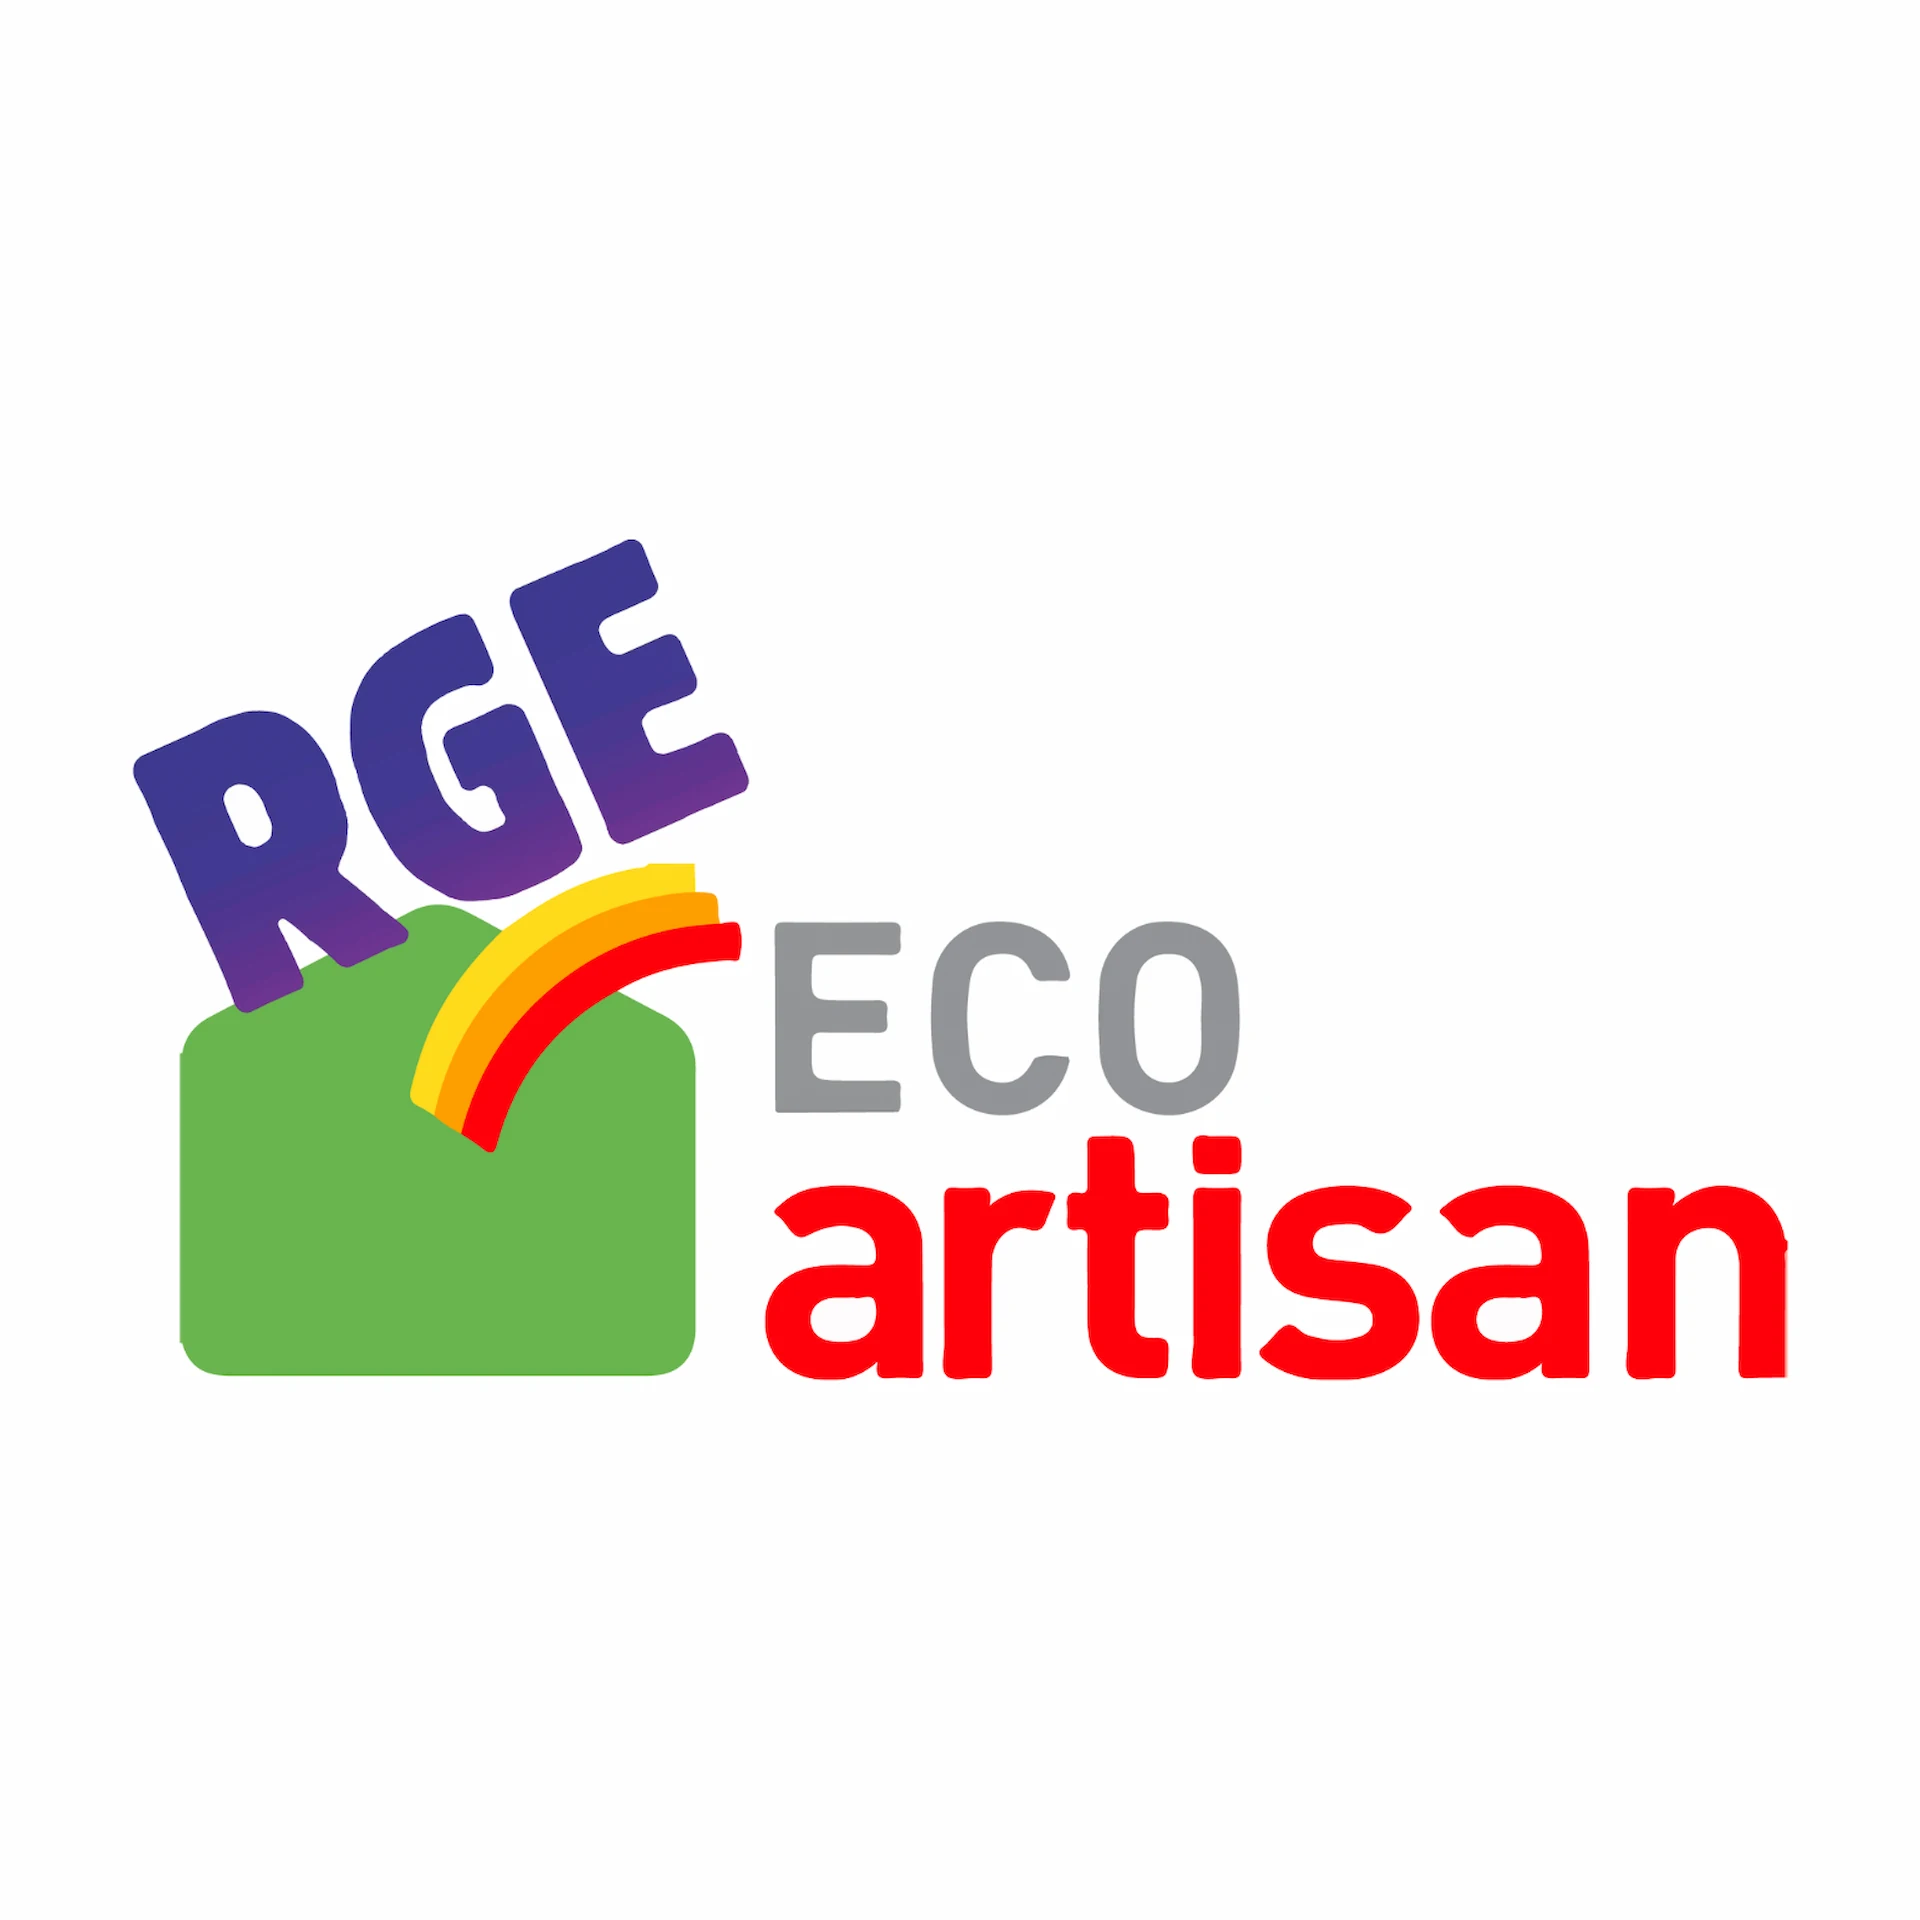 rge eco artisan